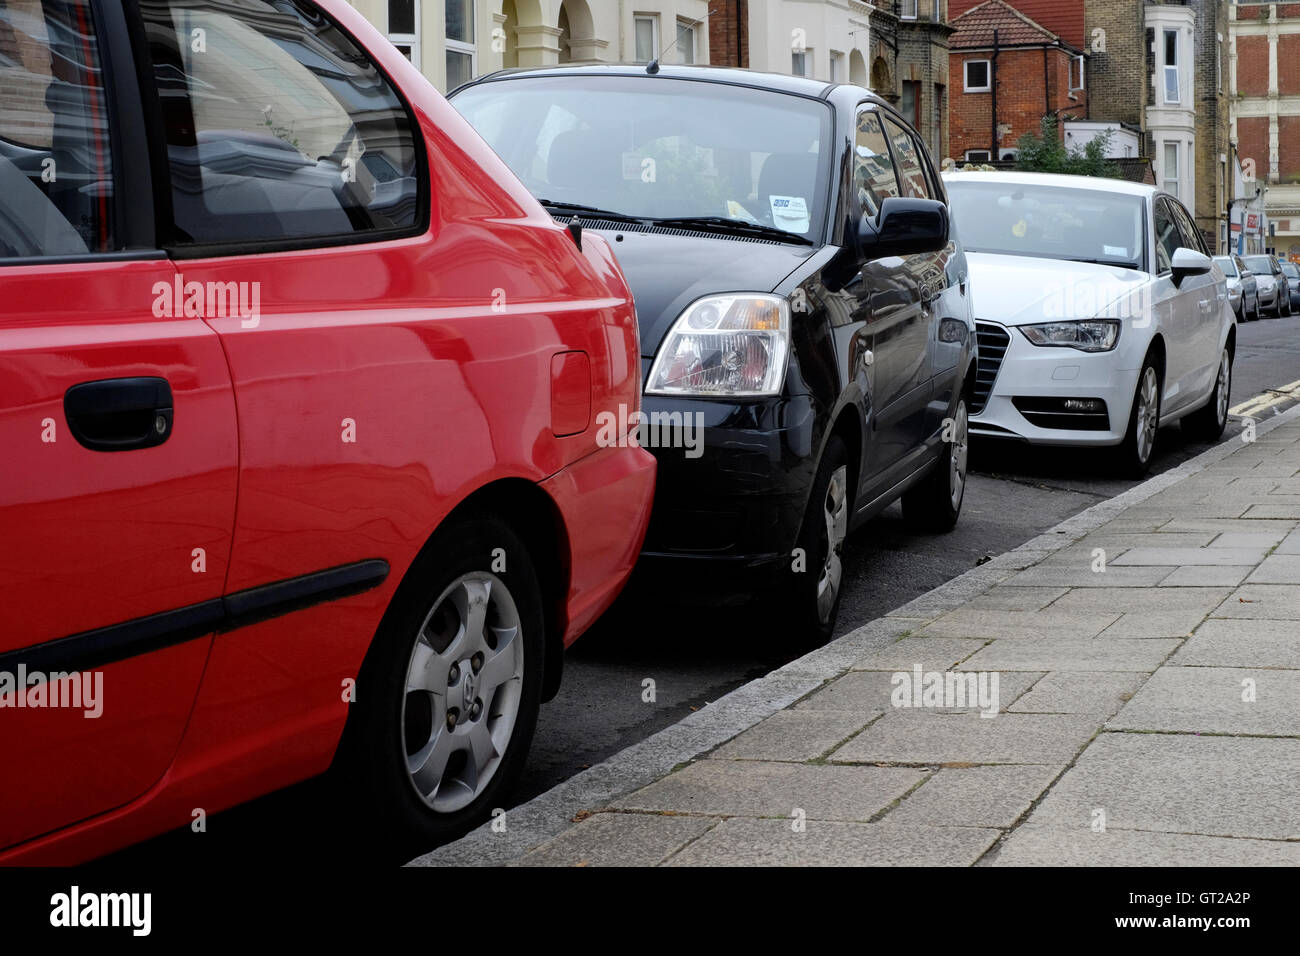 Mal voiture garée dans un quartier résidentiel de la rue urbaine england uk Banque D'Images